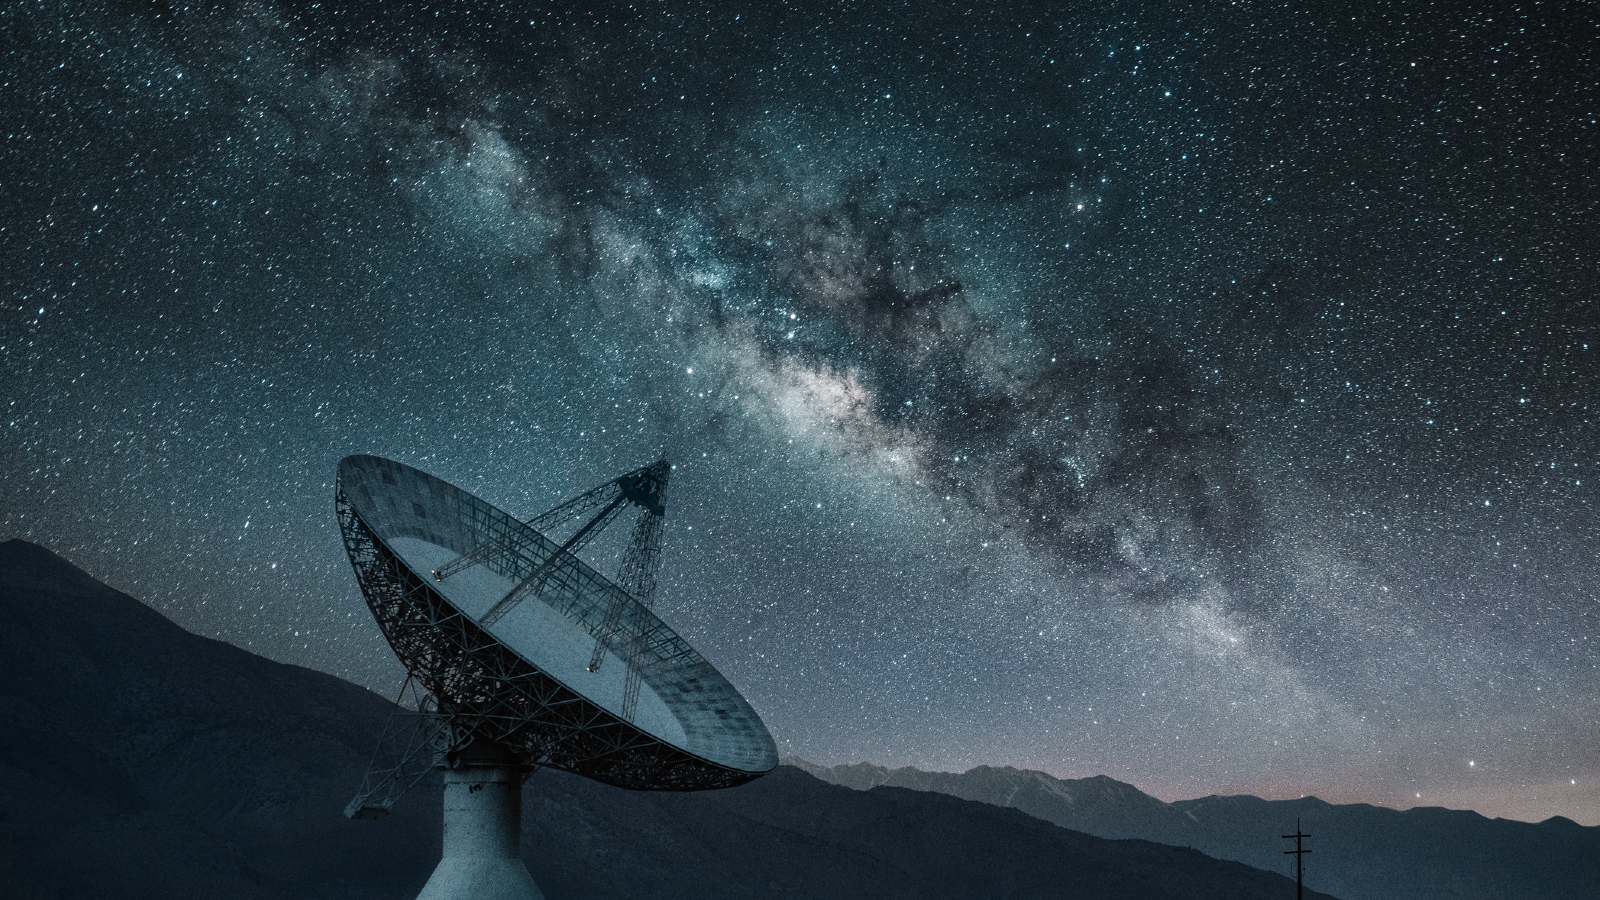 Um radiotelescópio em frente a um céu noturno estrelado